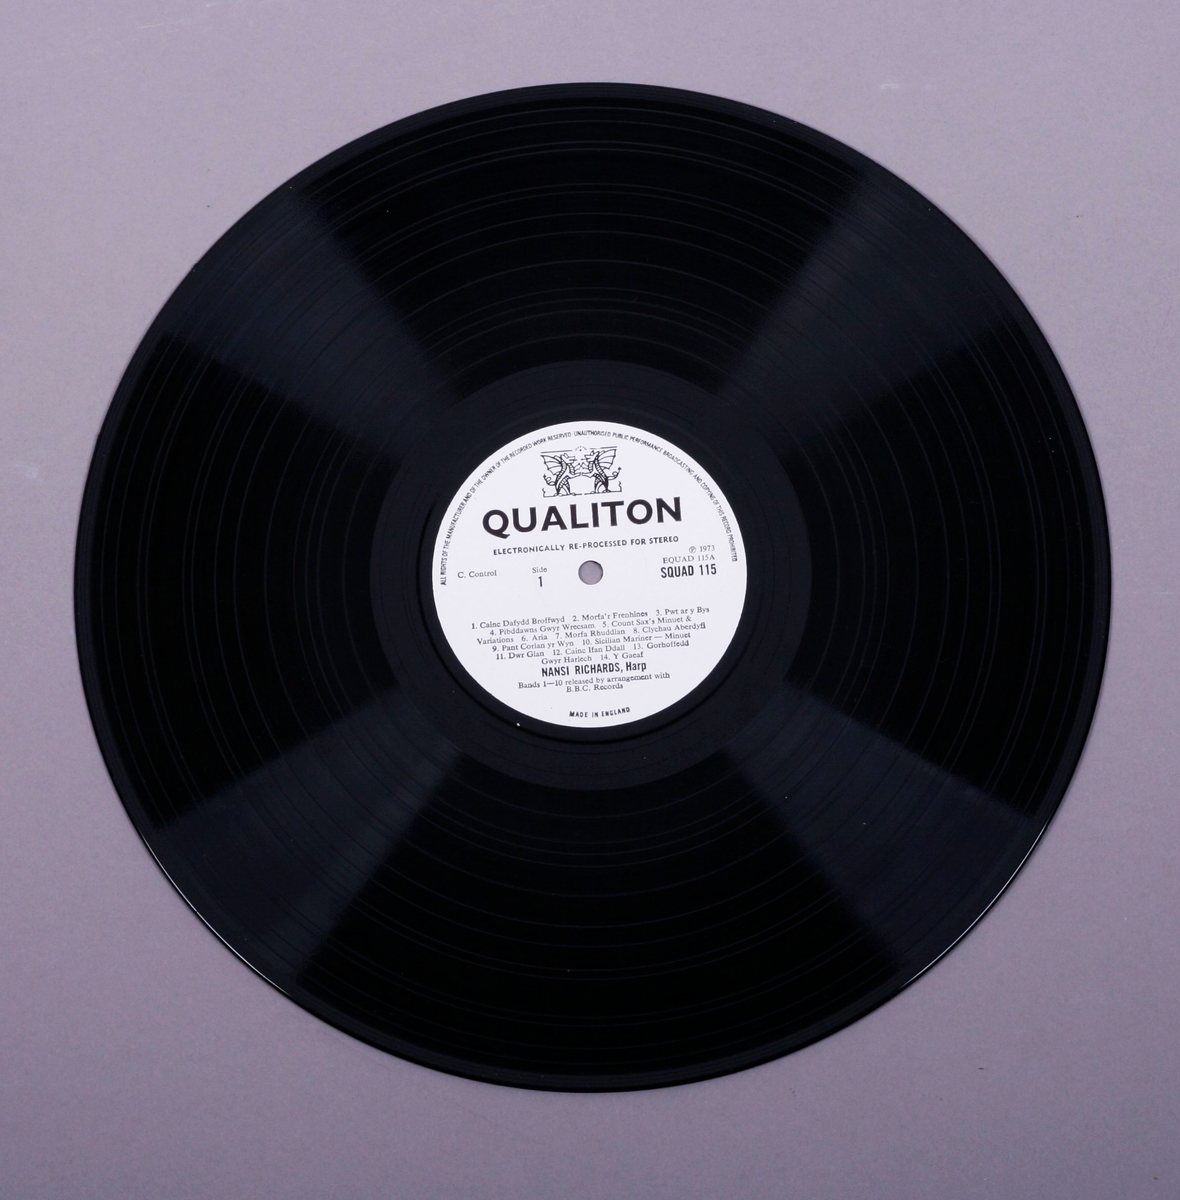 Grammofonplate i svart vinyl og plateomslag i papp. Plata ligger i en papirlomme med plast.